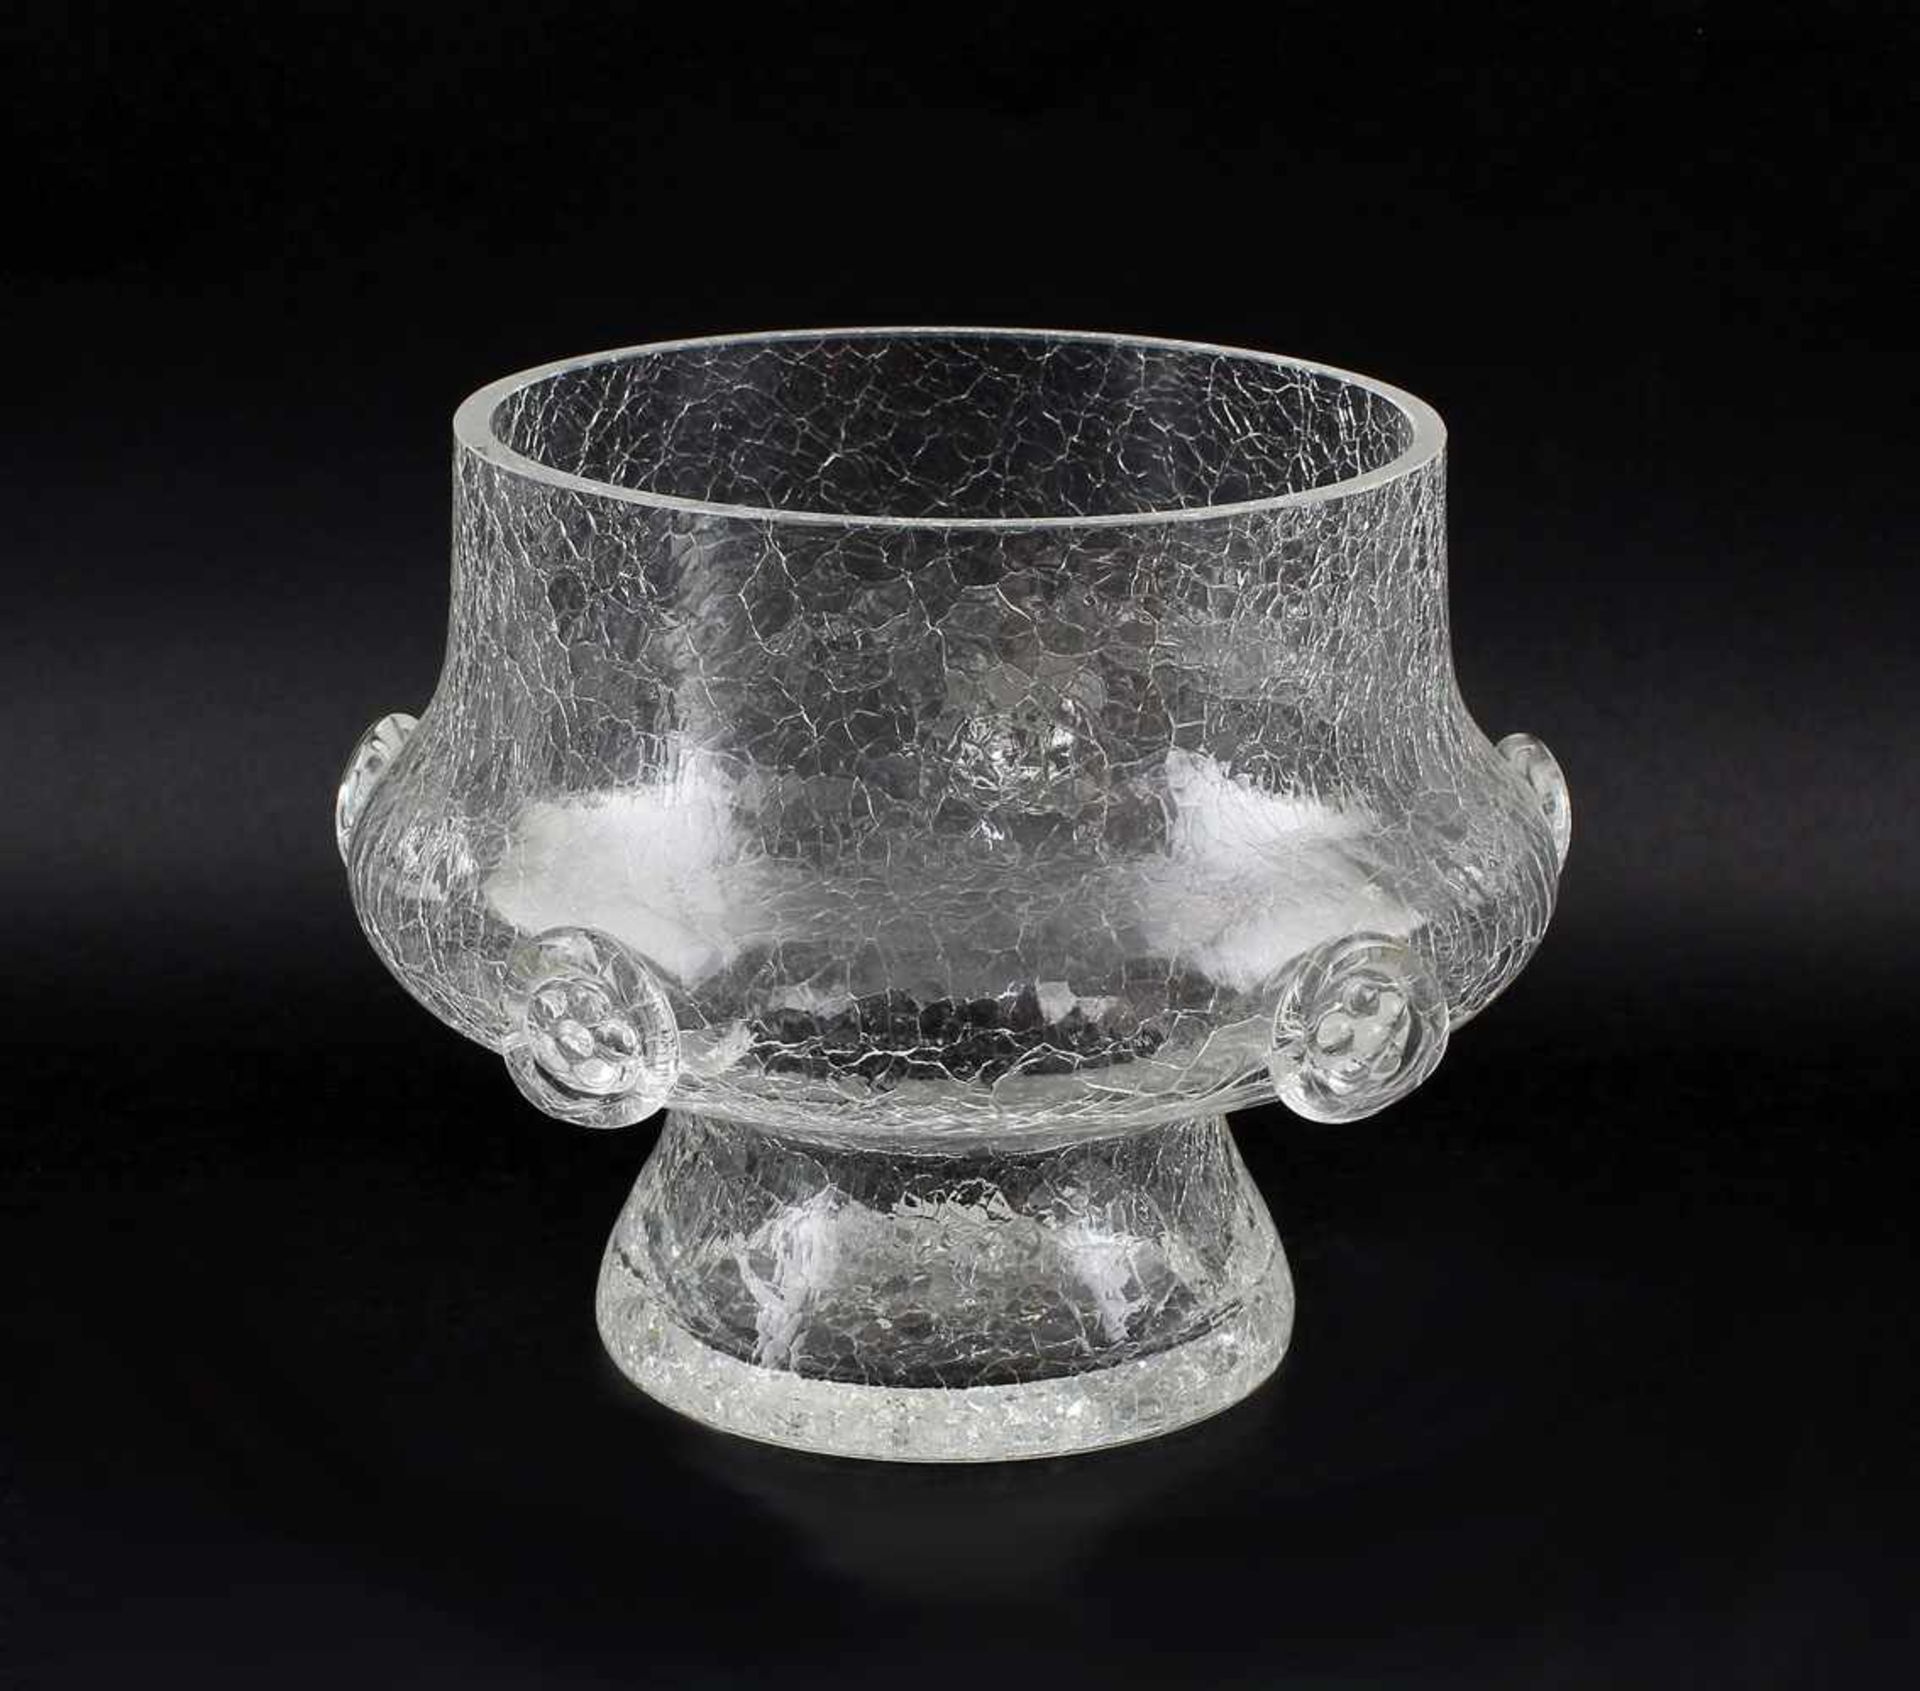 Vase Eisglas Bayrischer Wald. 1. Hälfte 20. Jh., wohl Bayrischer Wald, farbloses Glas, zylindrisch-